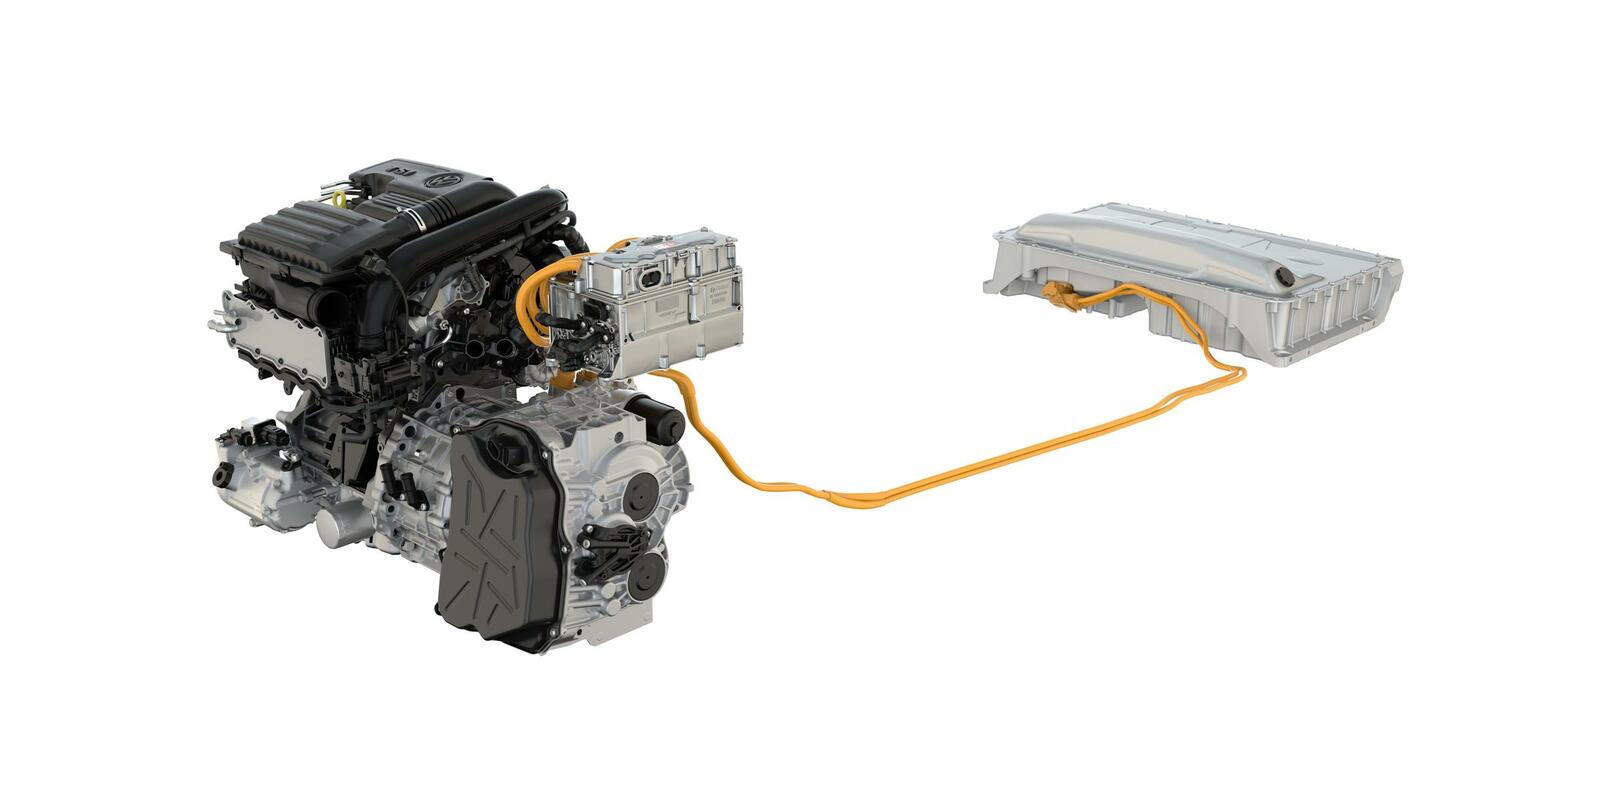 Verbrenner vor, Batterie hinten. Der Triebstrang des 1.4 TSI Plug-In Hybriden von VW mit einer Systemleistung von 180kW / 245 PS.